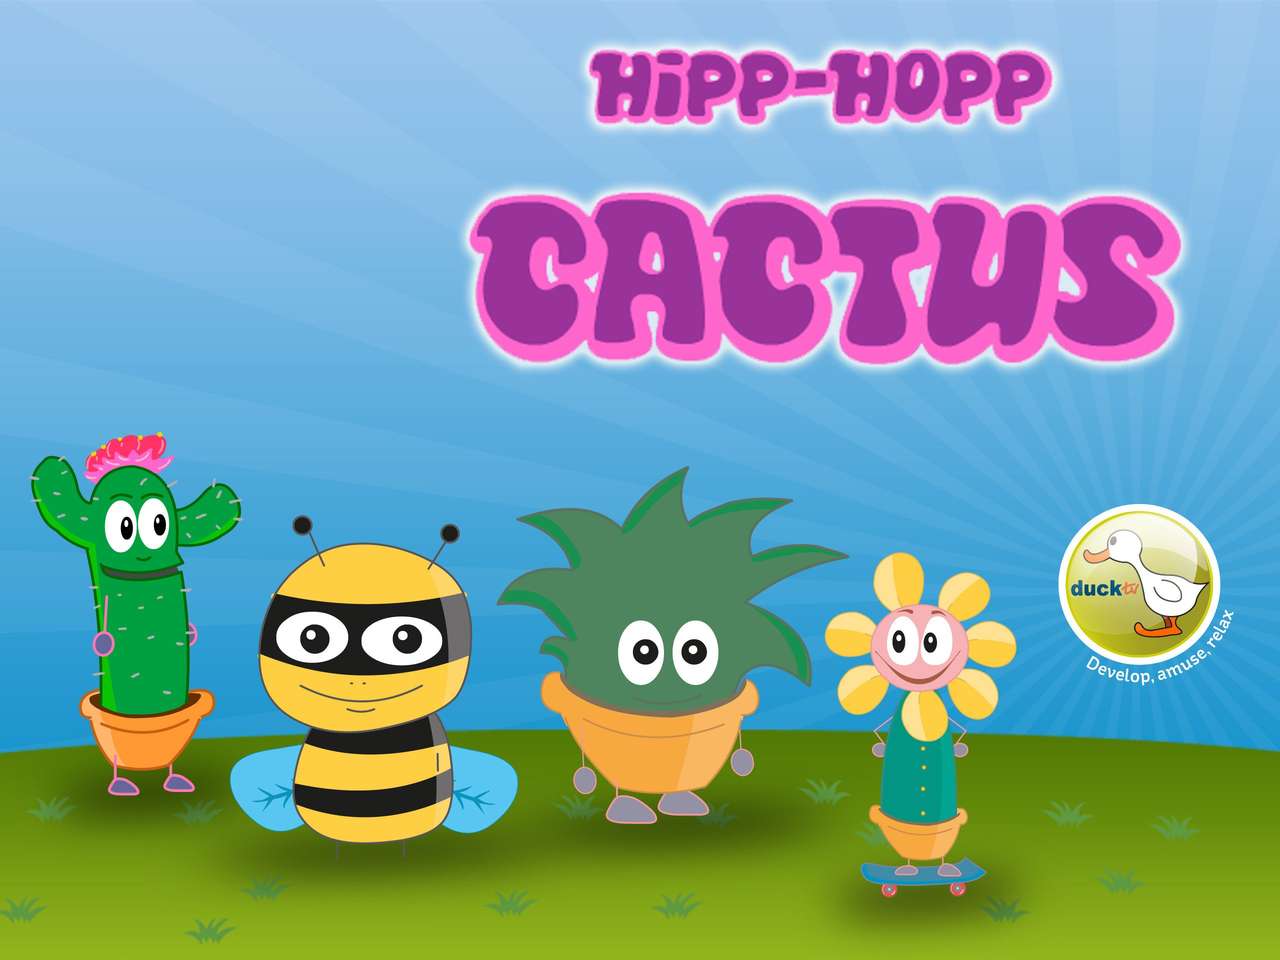 PUZZLE TV HIPP-HOPP CACTUS DUCK puzzle en ligne